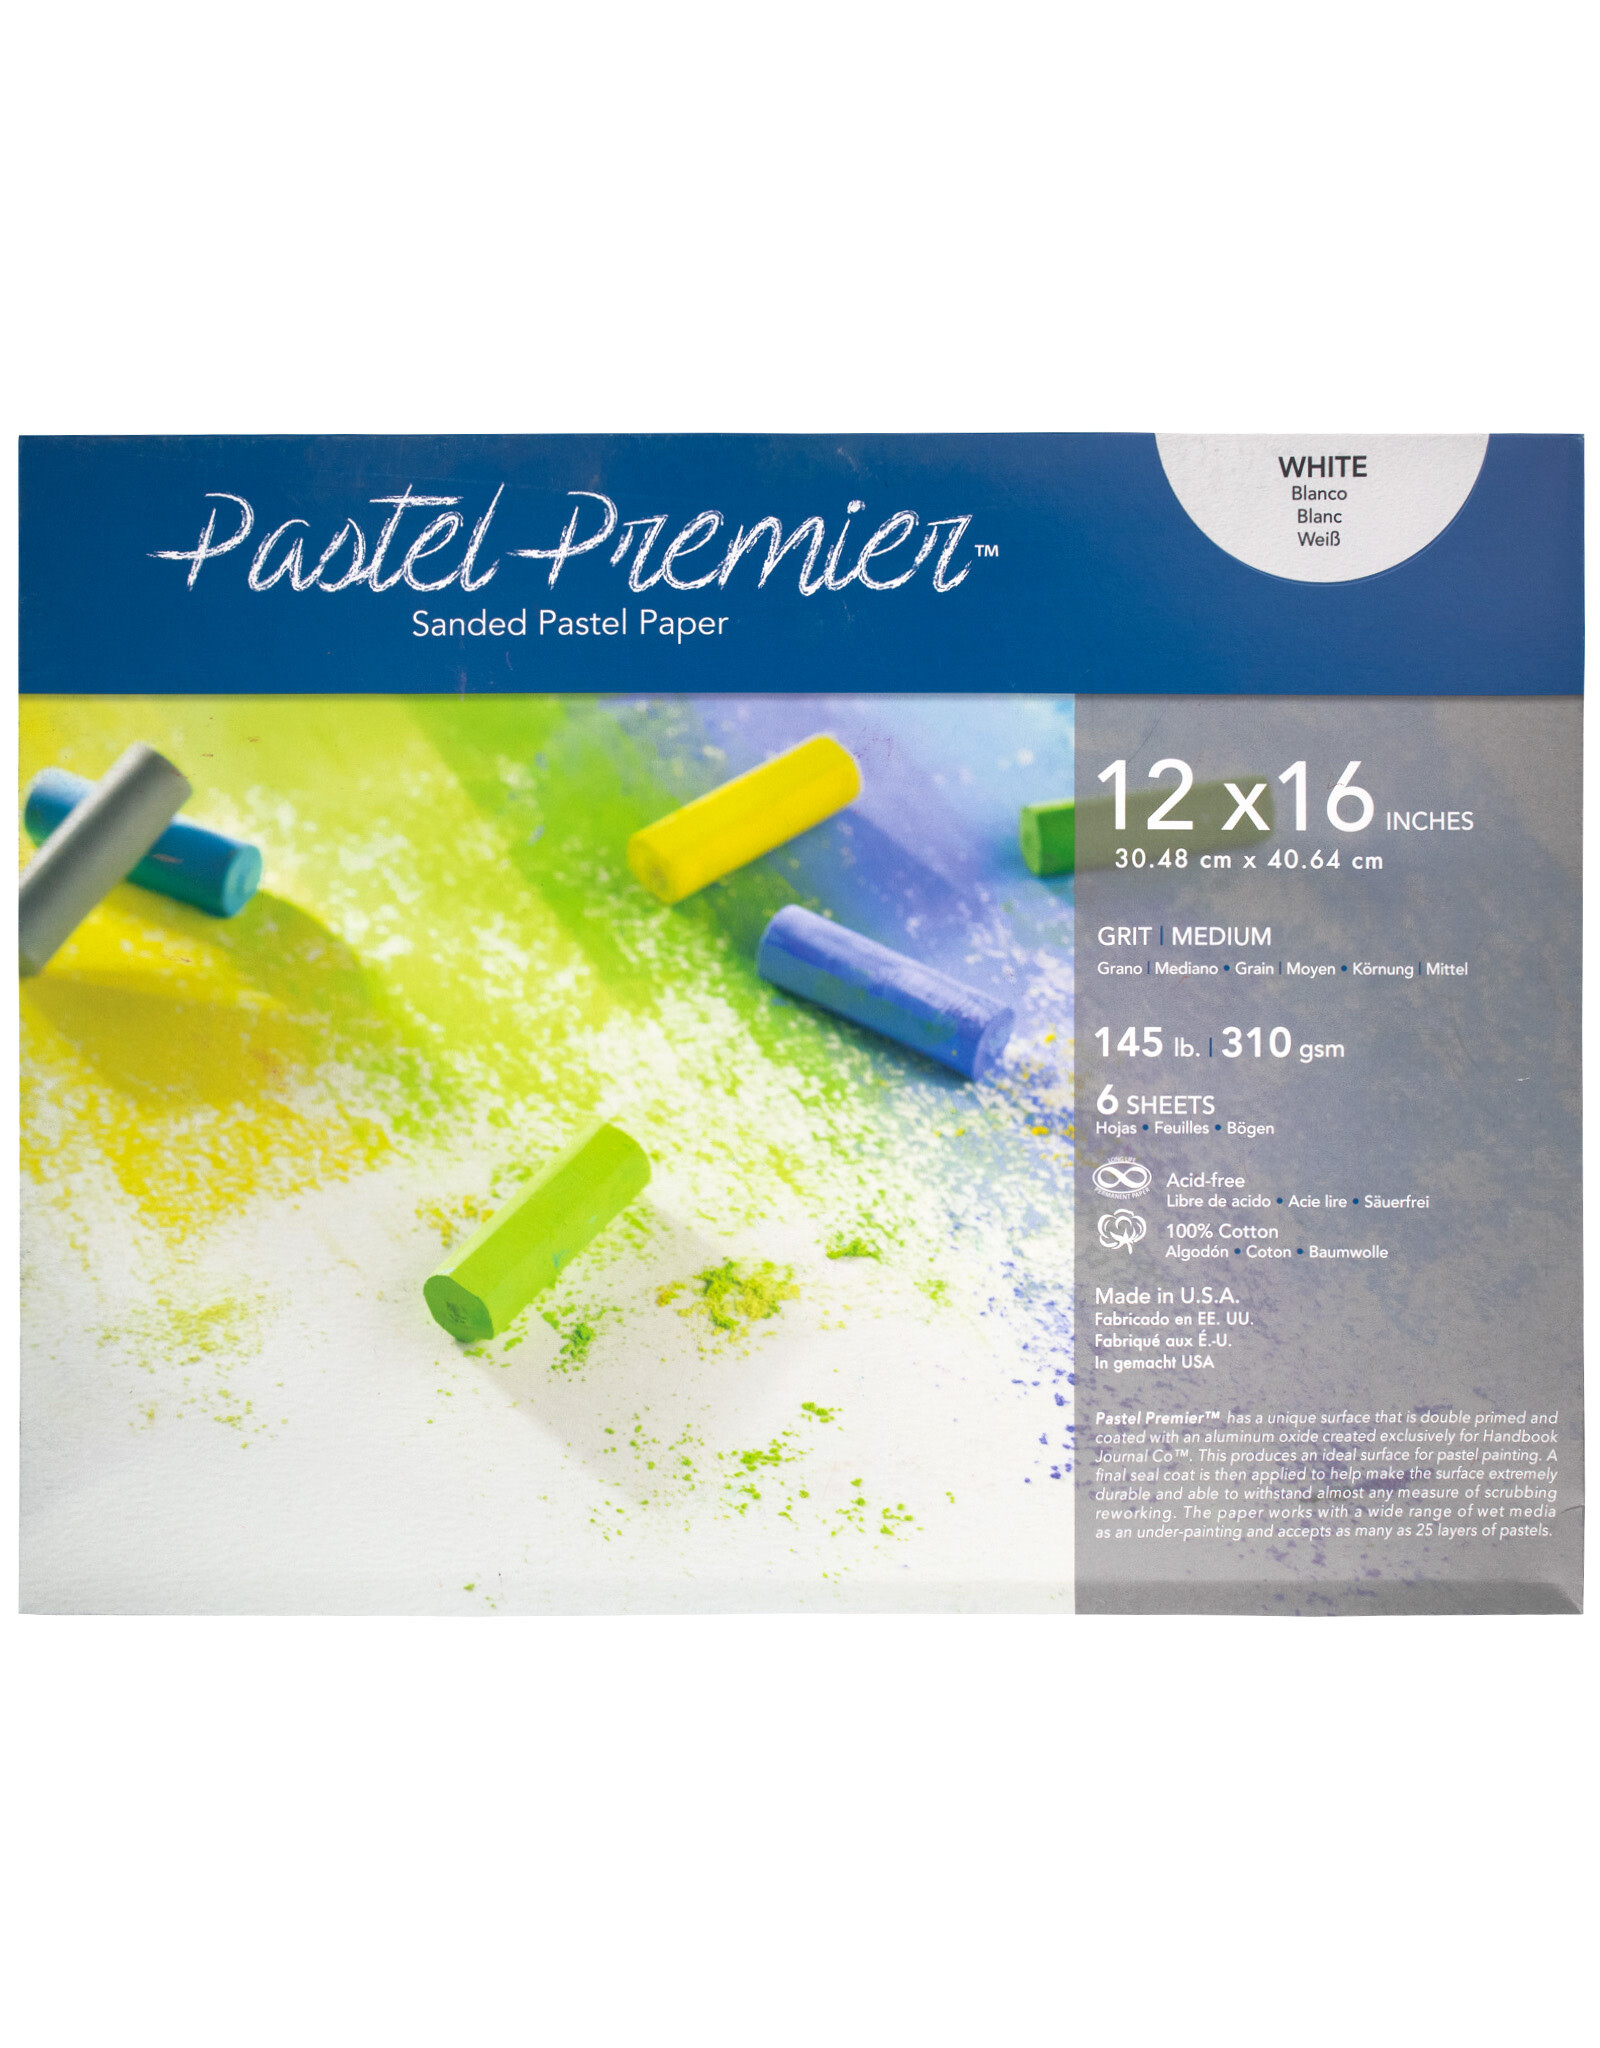 SPEEDBALL ART PRODUCTS Speedball Premier Pastel Pochette, Medium Grit, 12” x 16”, White